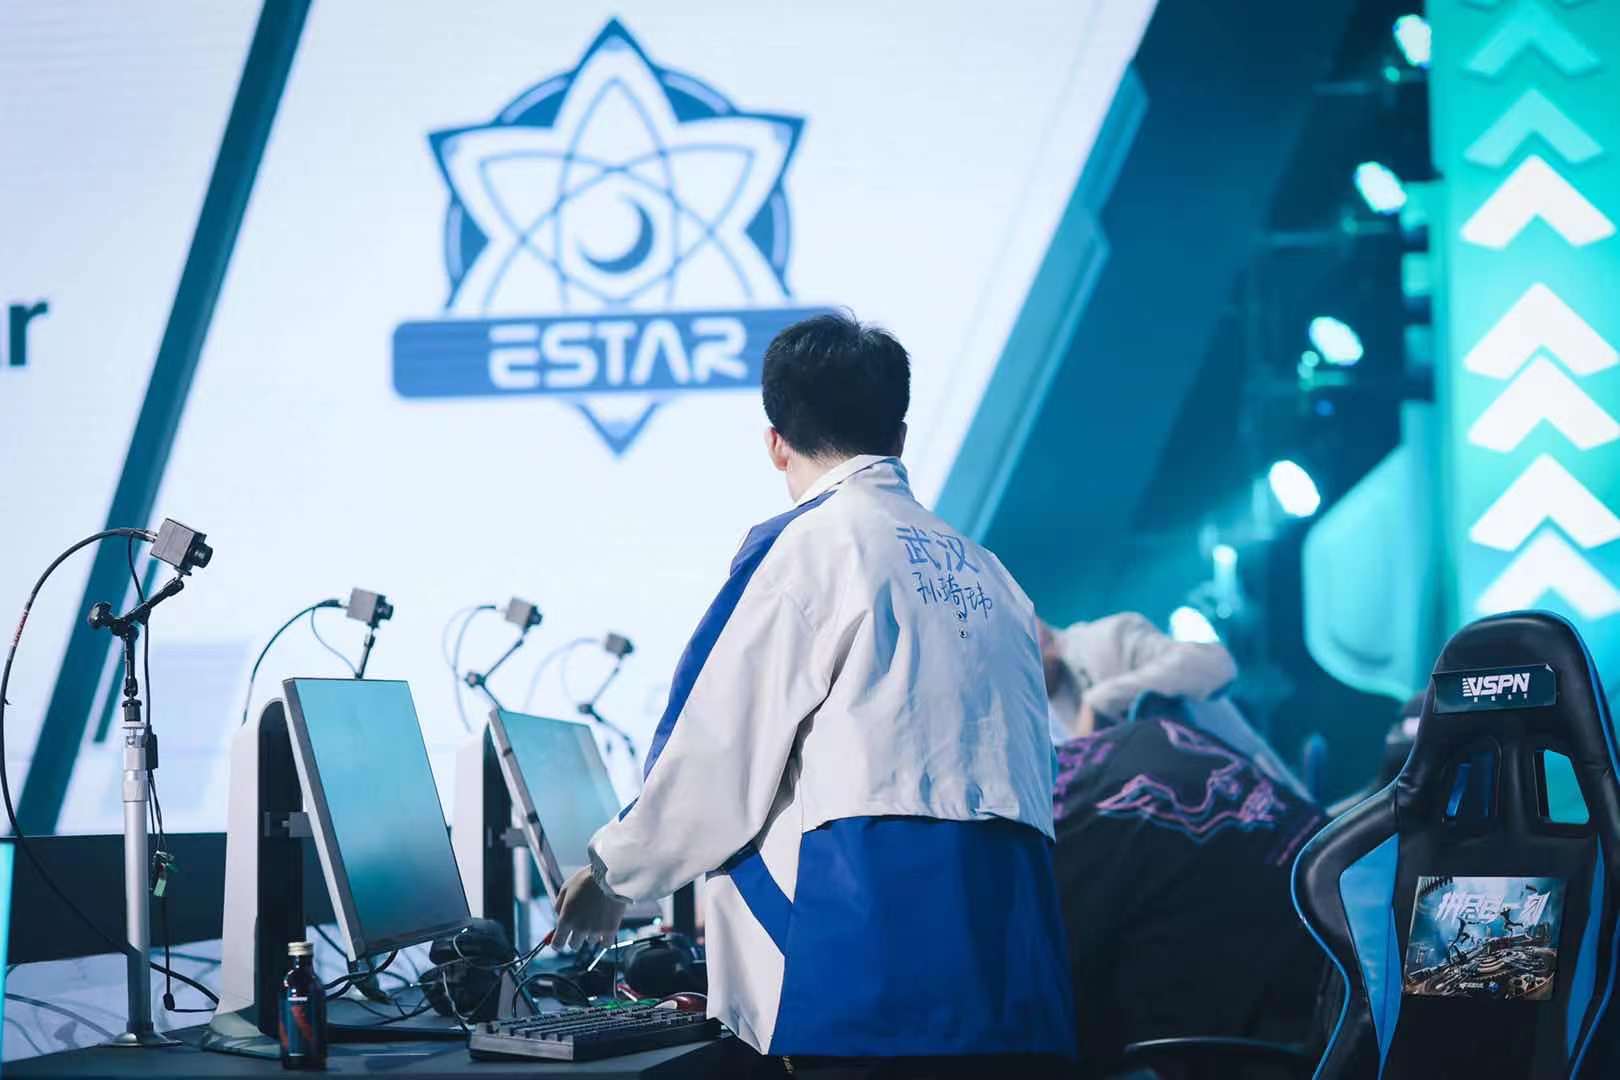 eStar|季后赛首战骑士礼 最强阵容正面迎敌eStar